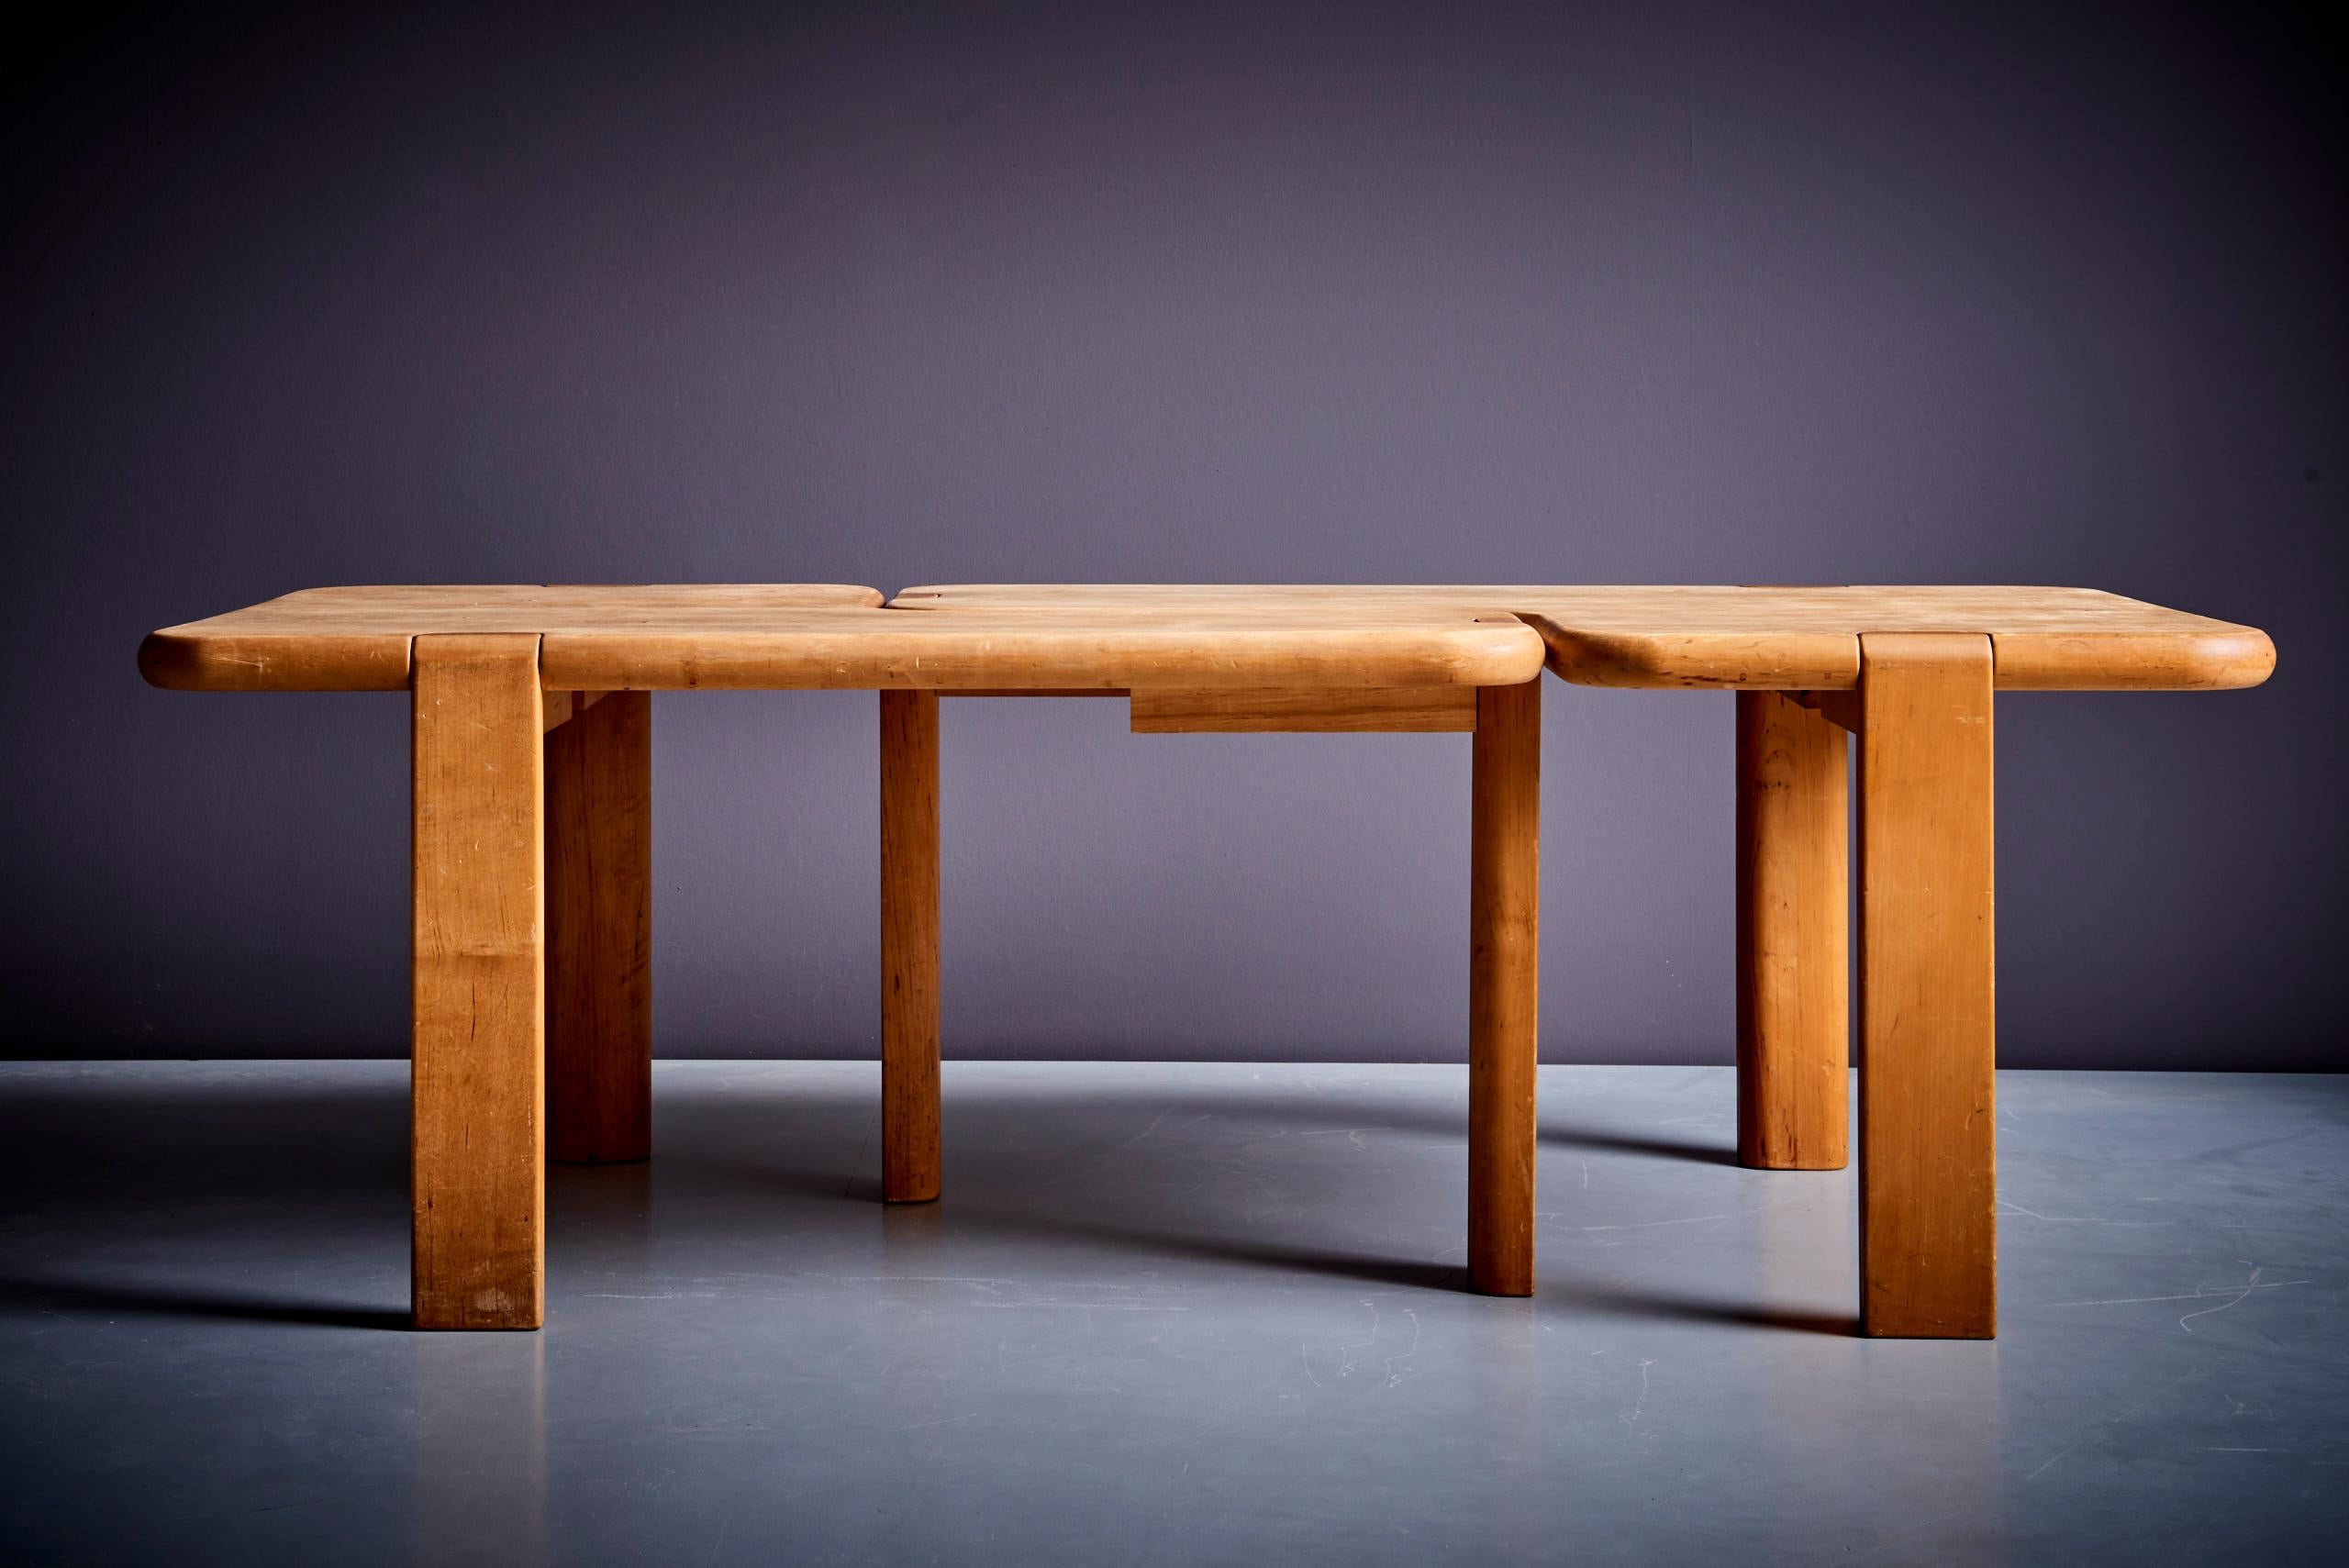 Paire de tables basses en bois d'érable Aksel Kjersgaard, Danemark - années 1970 en bon état d'origine. 